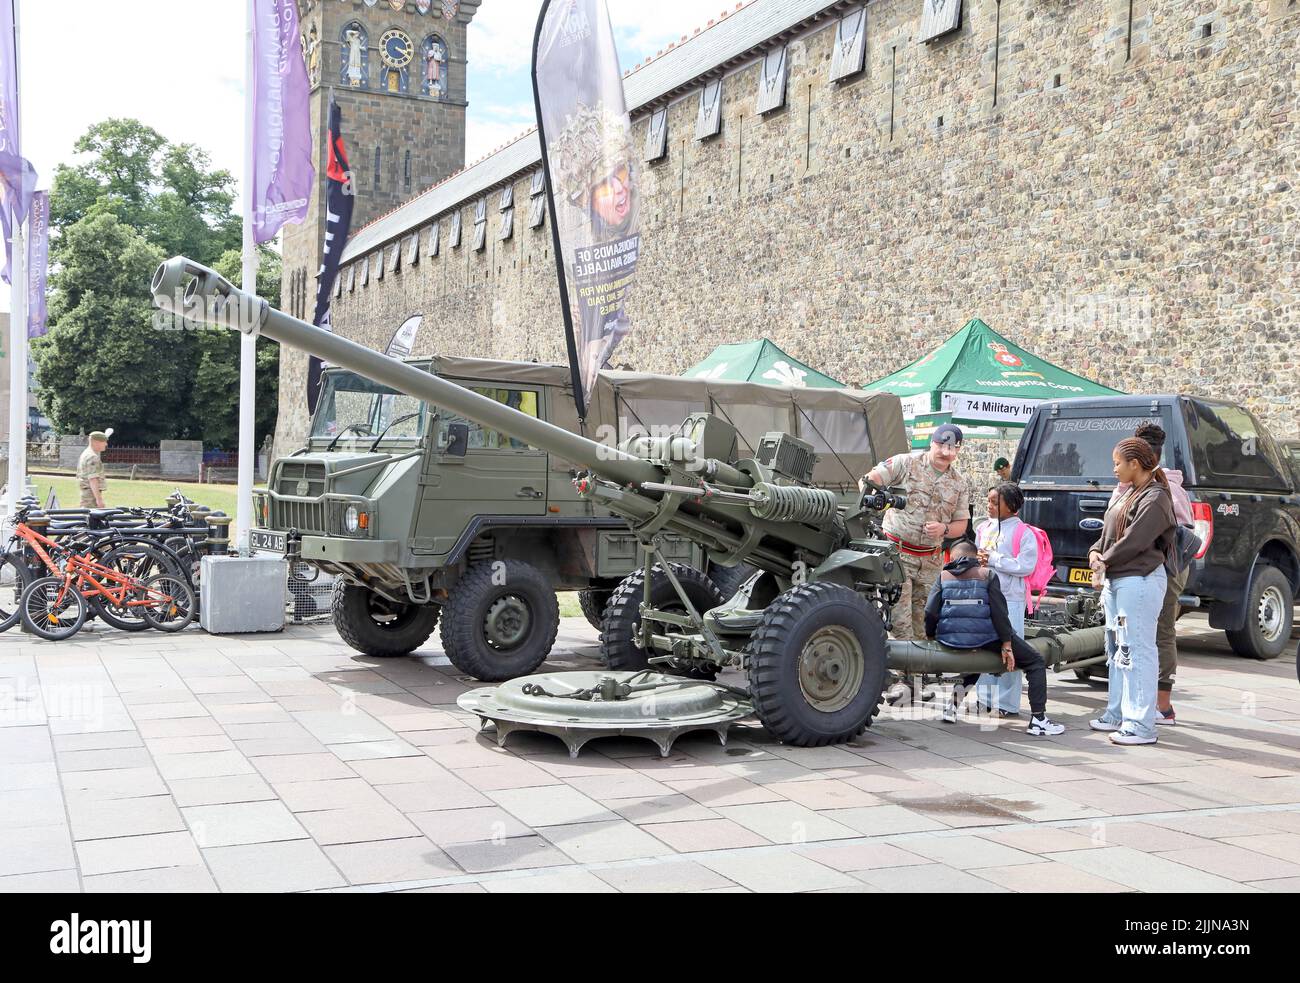 Soldat, der der ethnischen Familiengruppe eine große Waffe/Kanone zeigt. Rekrutierungsstände der Streitkräfte, Central Cardiff, Juli 2022. Sommer. Stockfoto